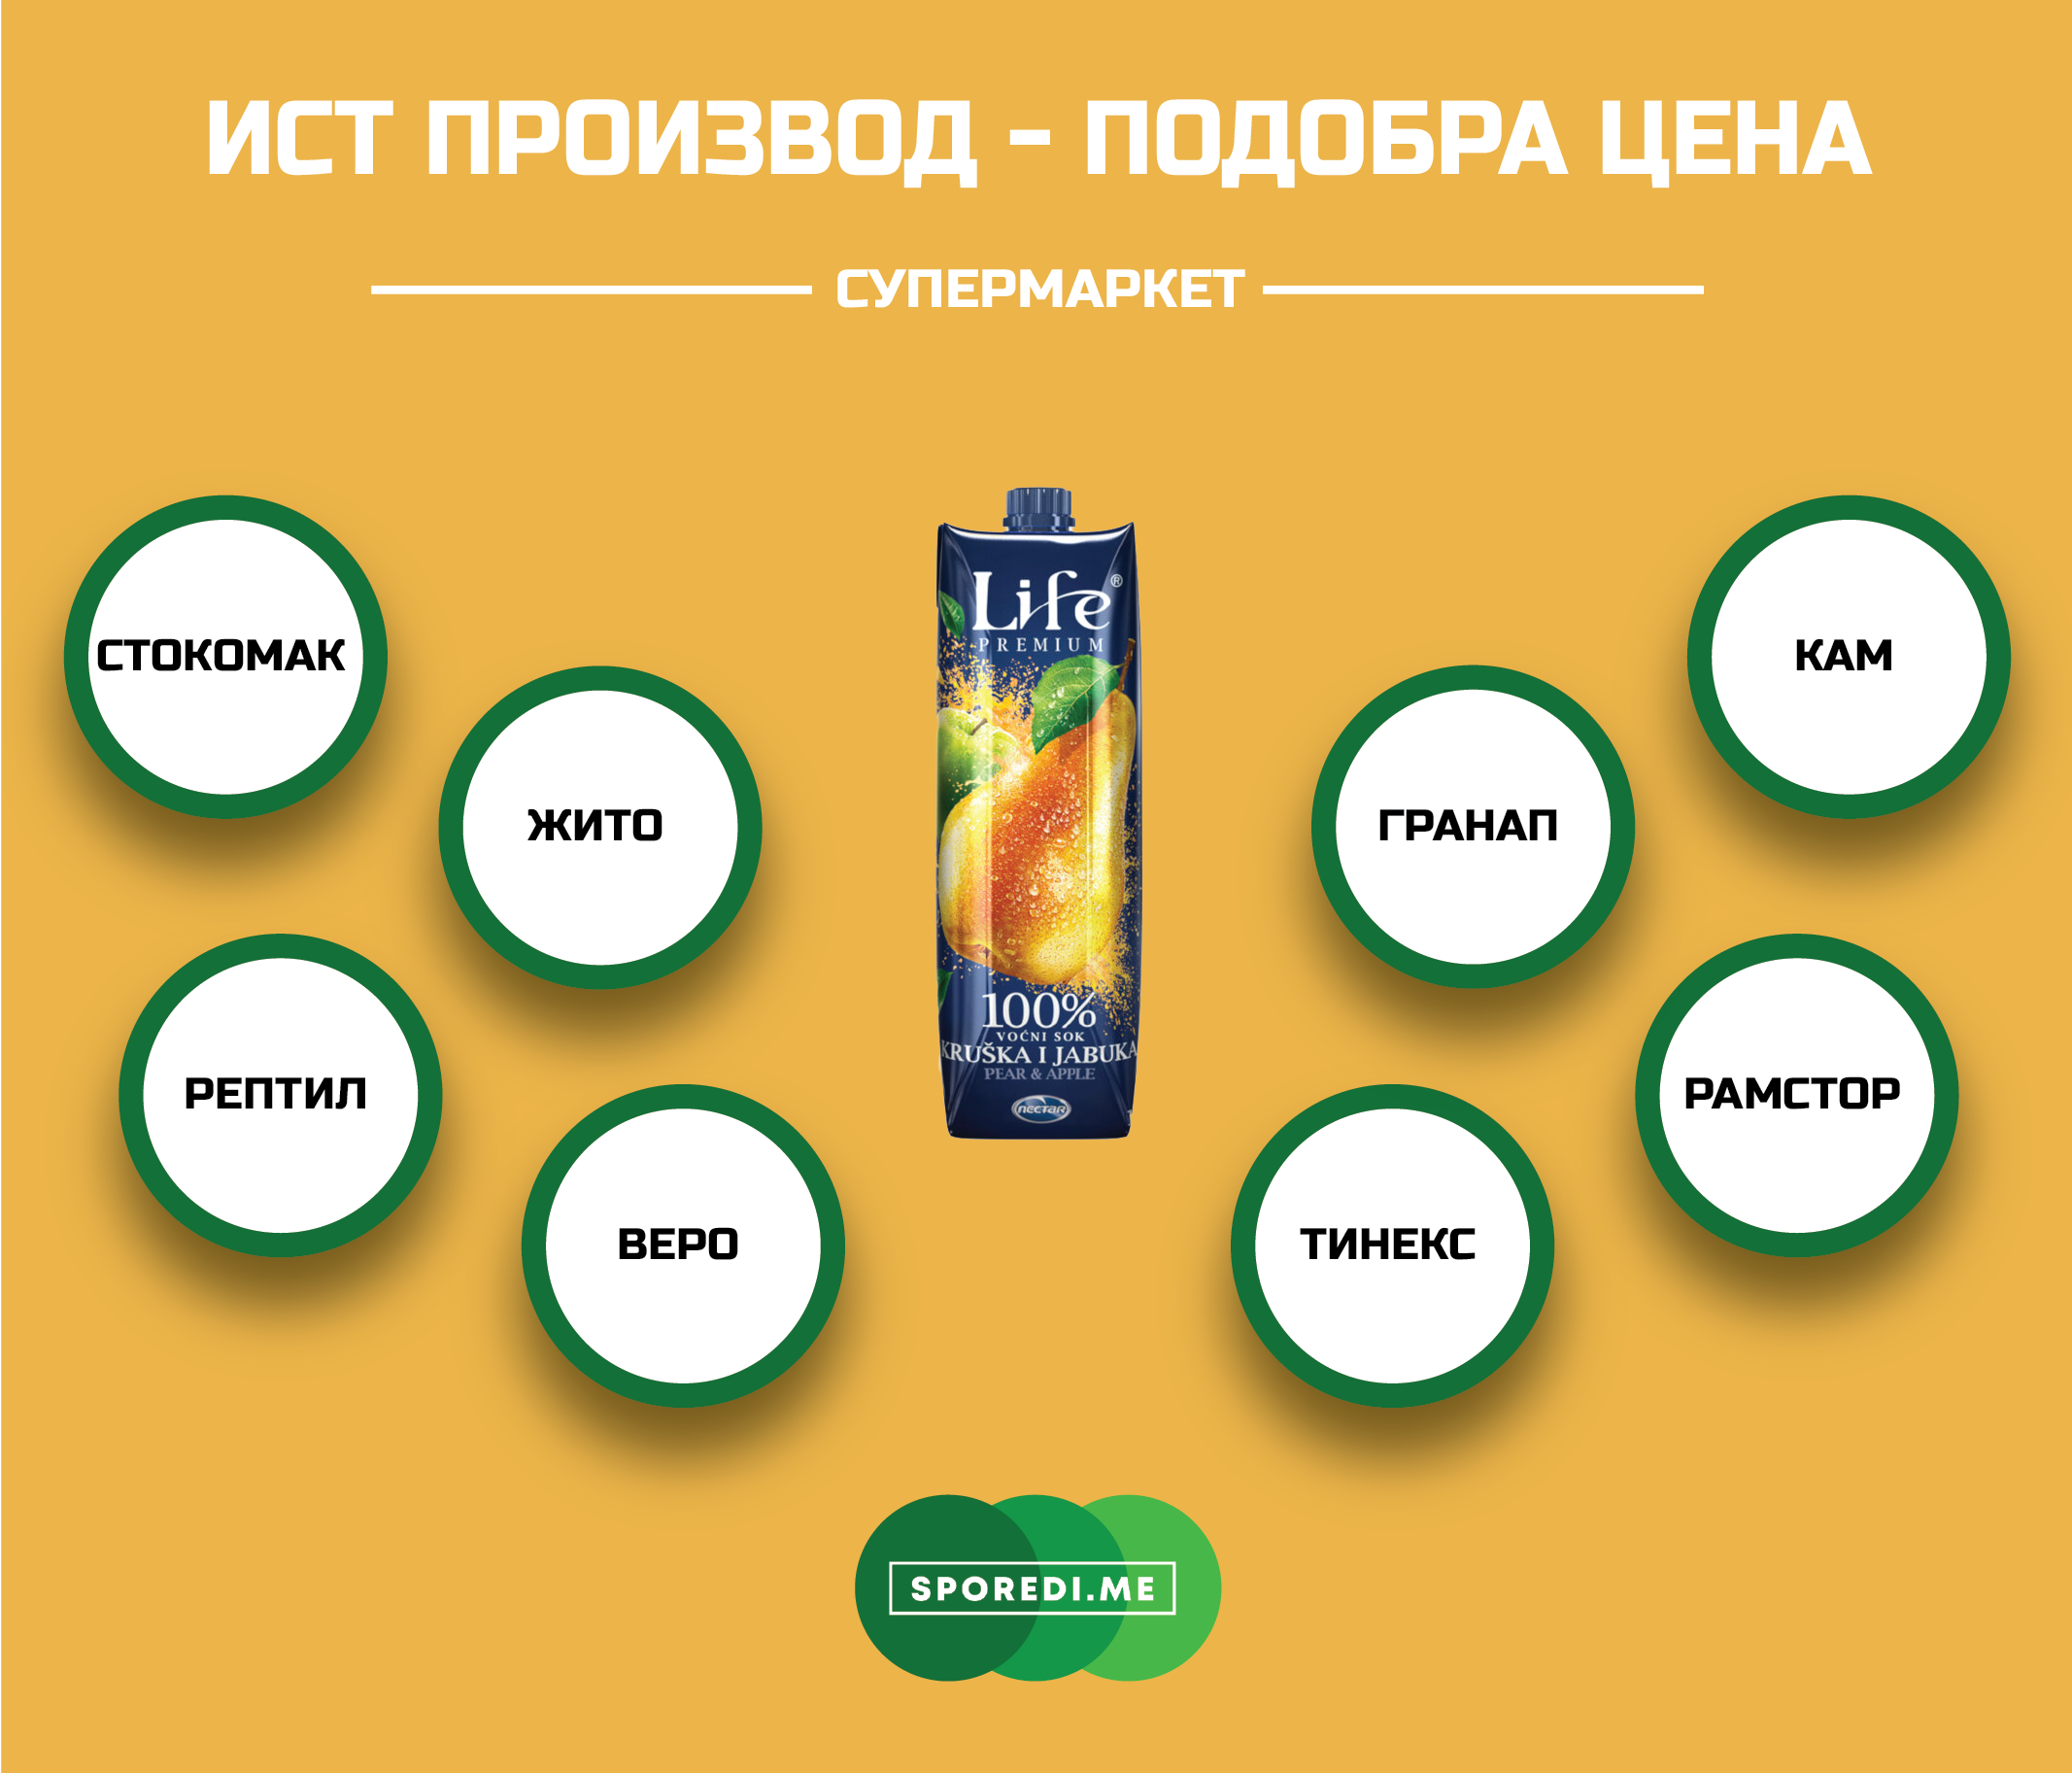 Каде сокот од круша и јаболко на српскиот бренд Нектар Life има најповолна цена?